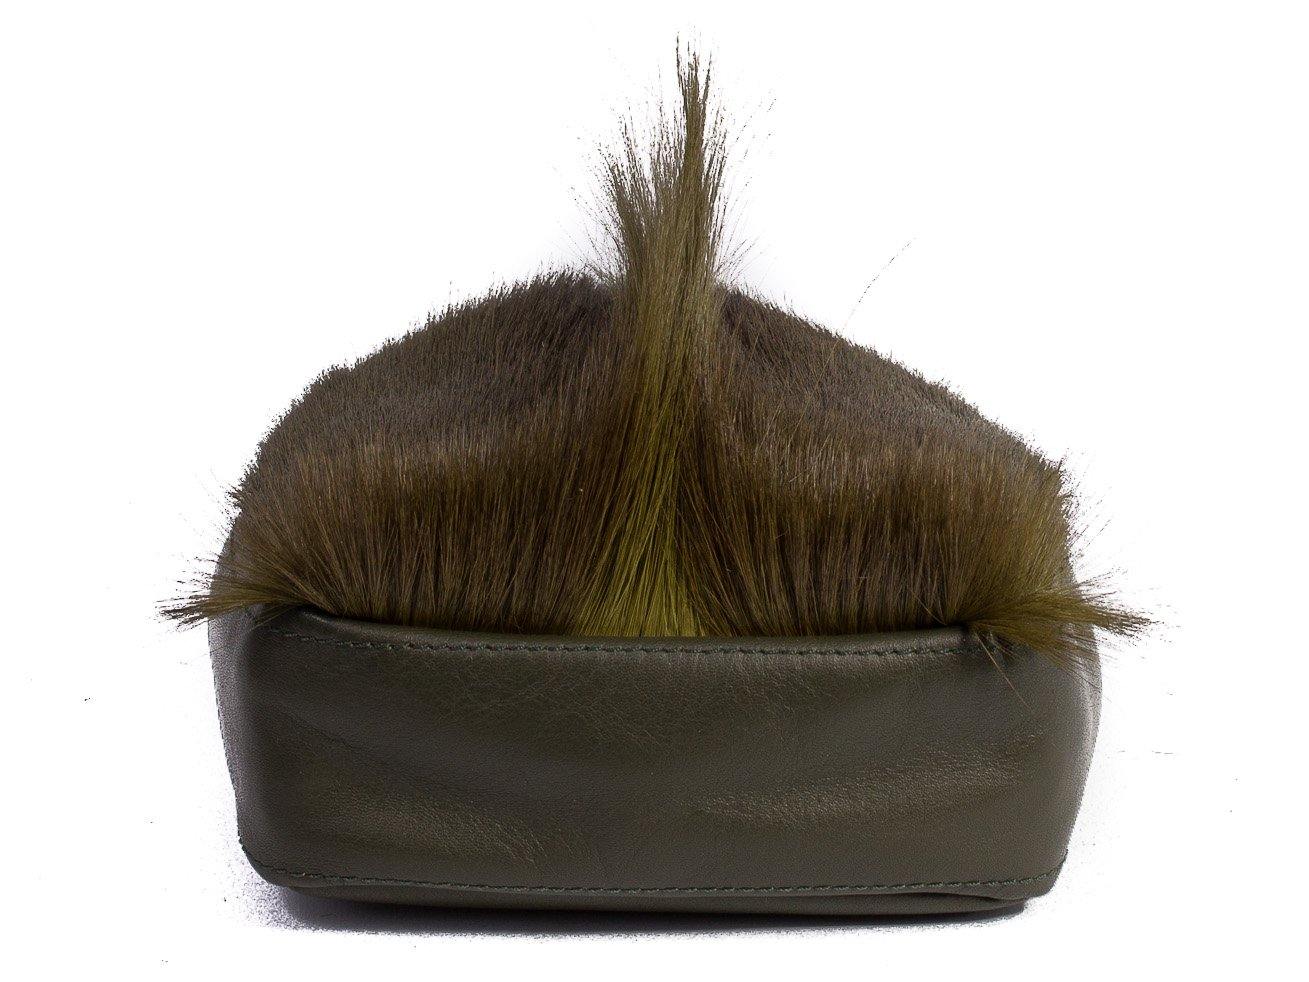 sherene melinda springbok hair-on-hide green leather pouch bag Fan bottom